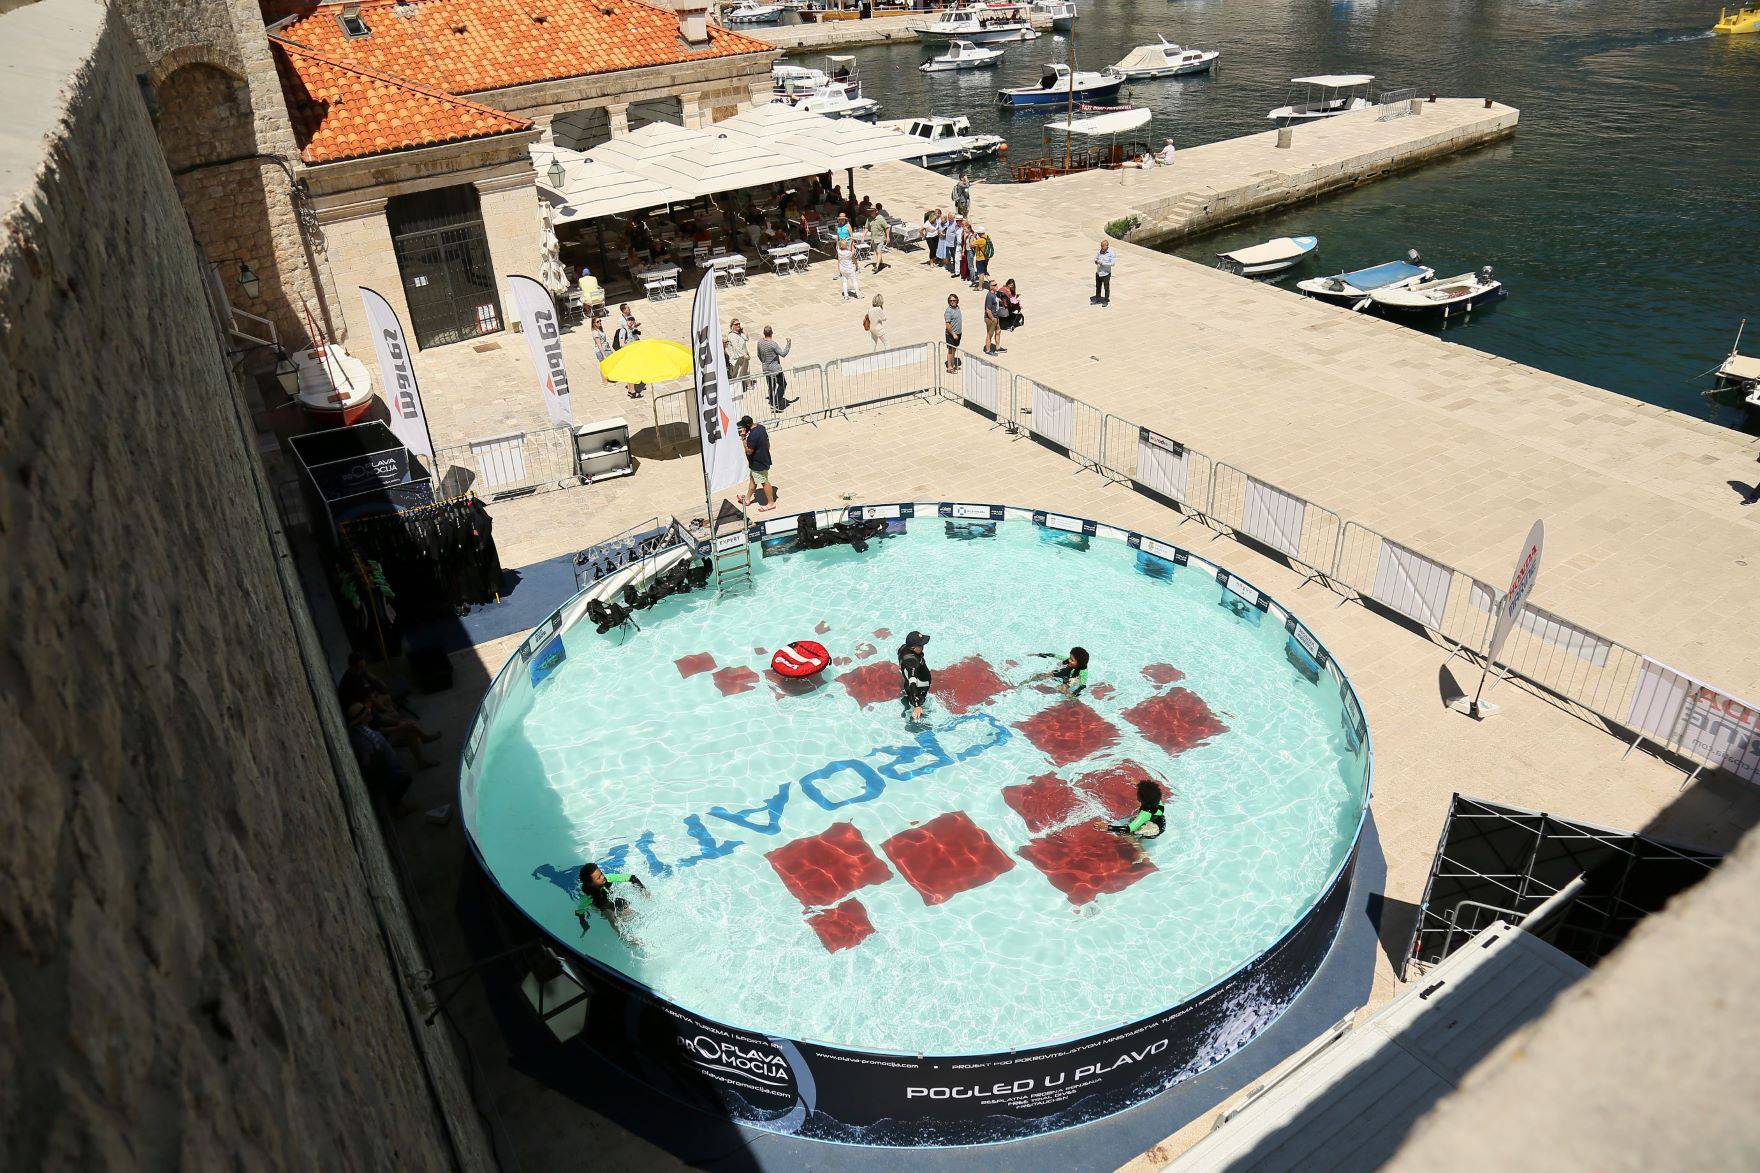 Pogled u plavo u Dubrovniku: U bazenu organizirana podvodna izložba, ronilo se i uz Zidine